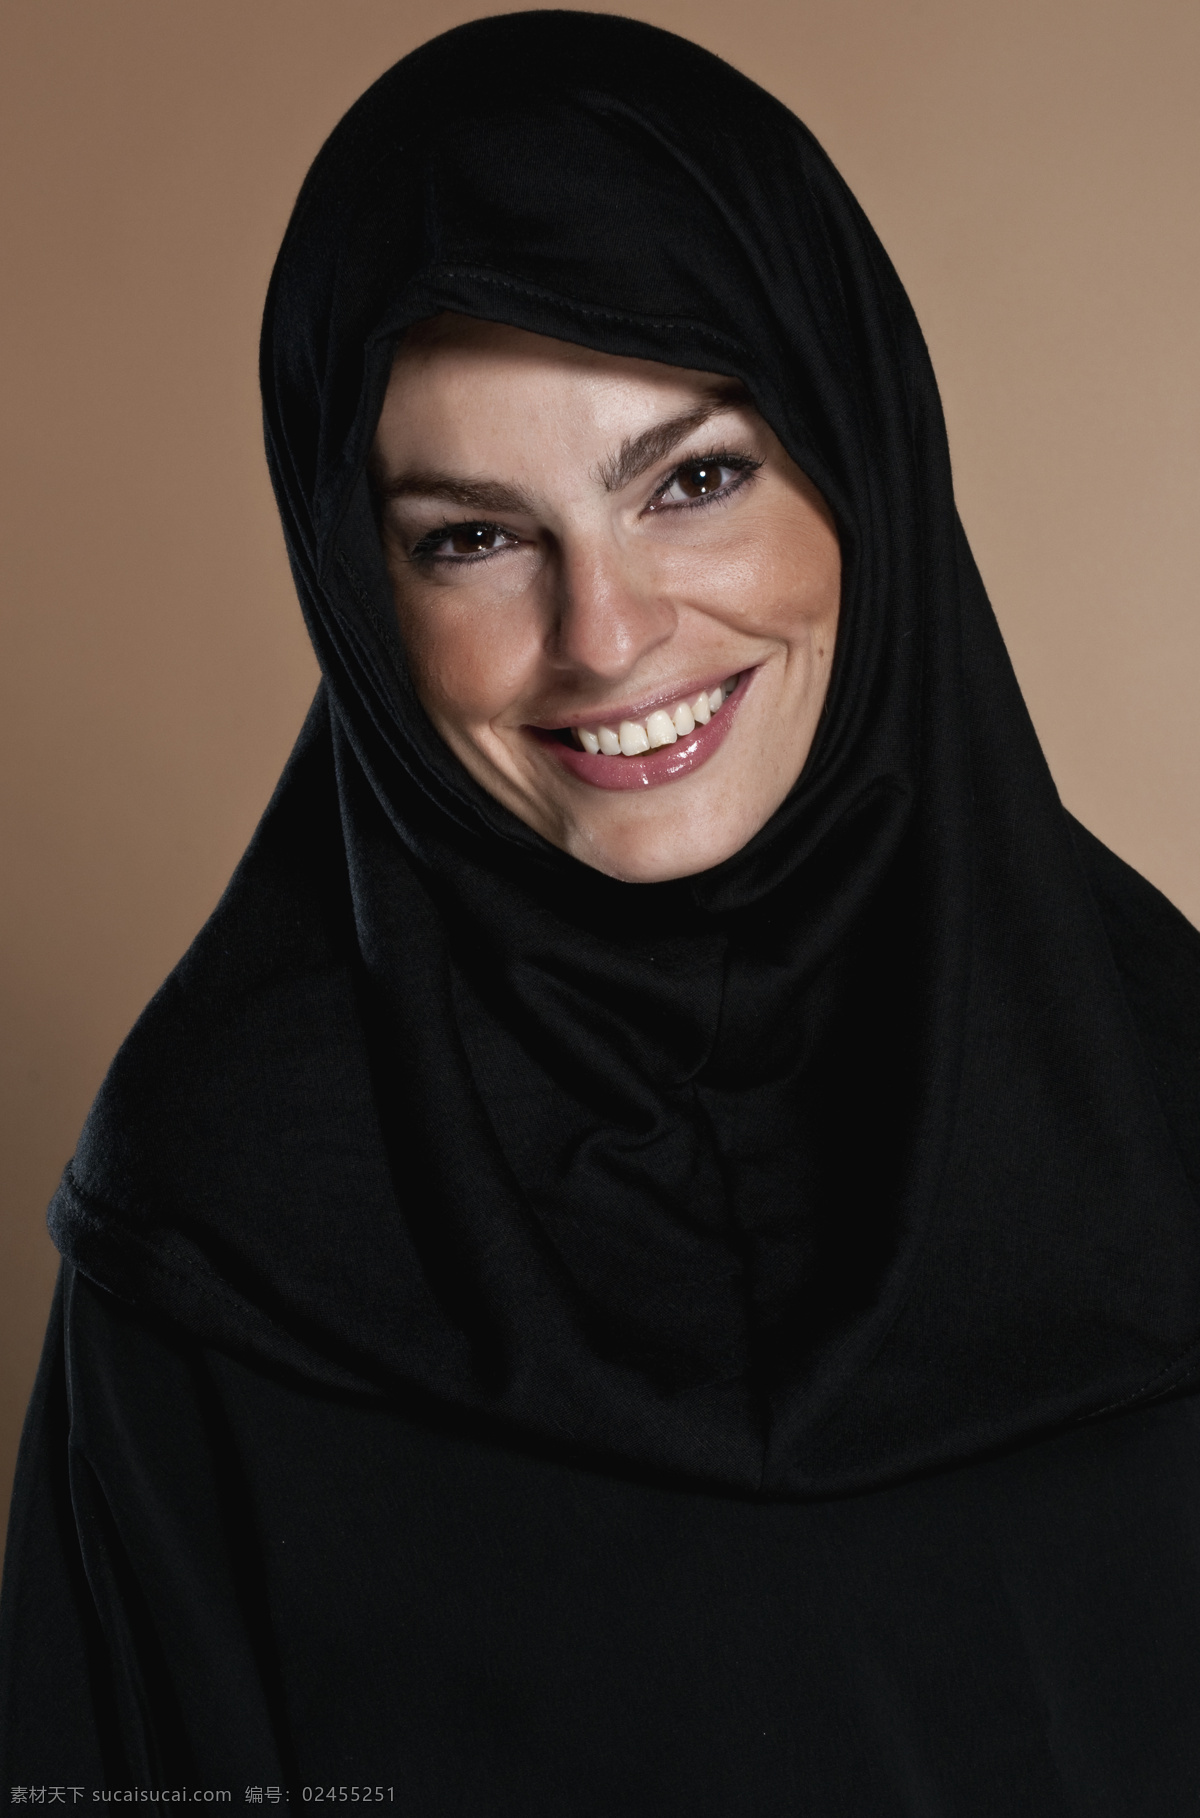 微笑 伊斯兰教 教徒 阿拉伯女性 阿拉伯女人 女教徒 信徒 宗教信仰 生活人物 人物图片